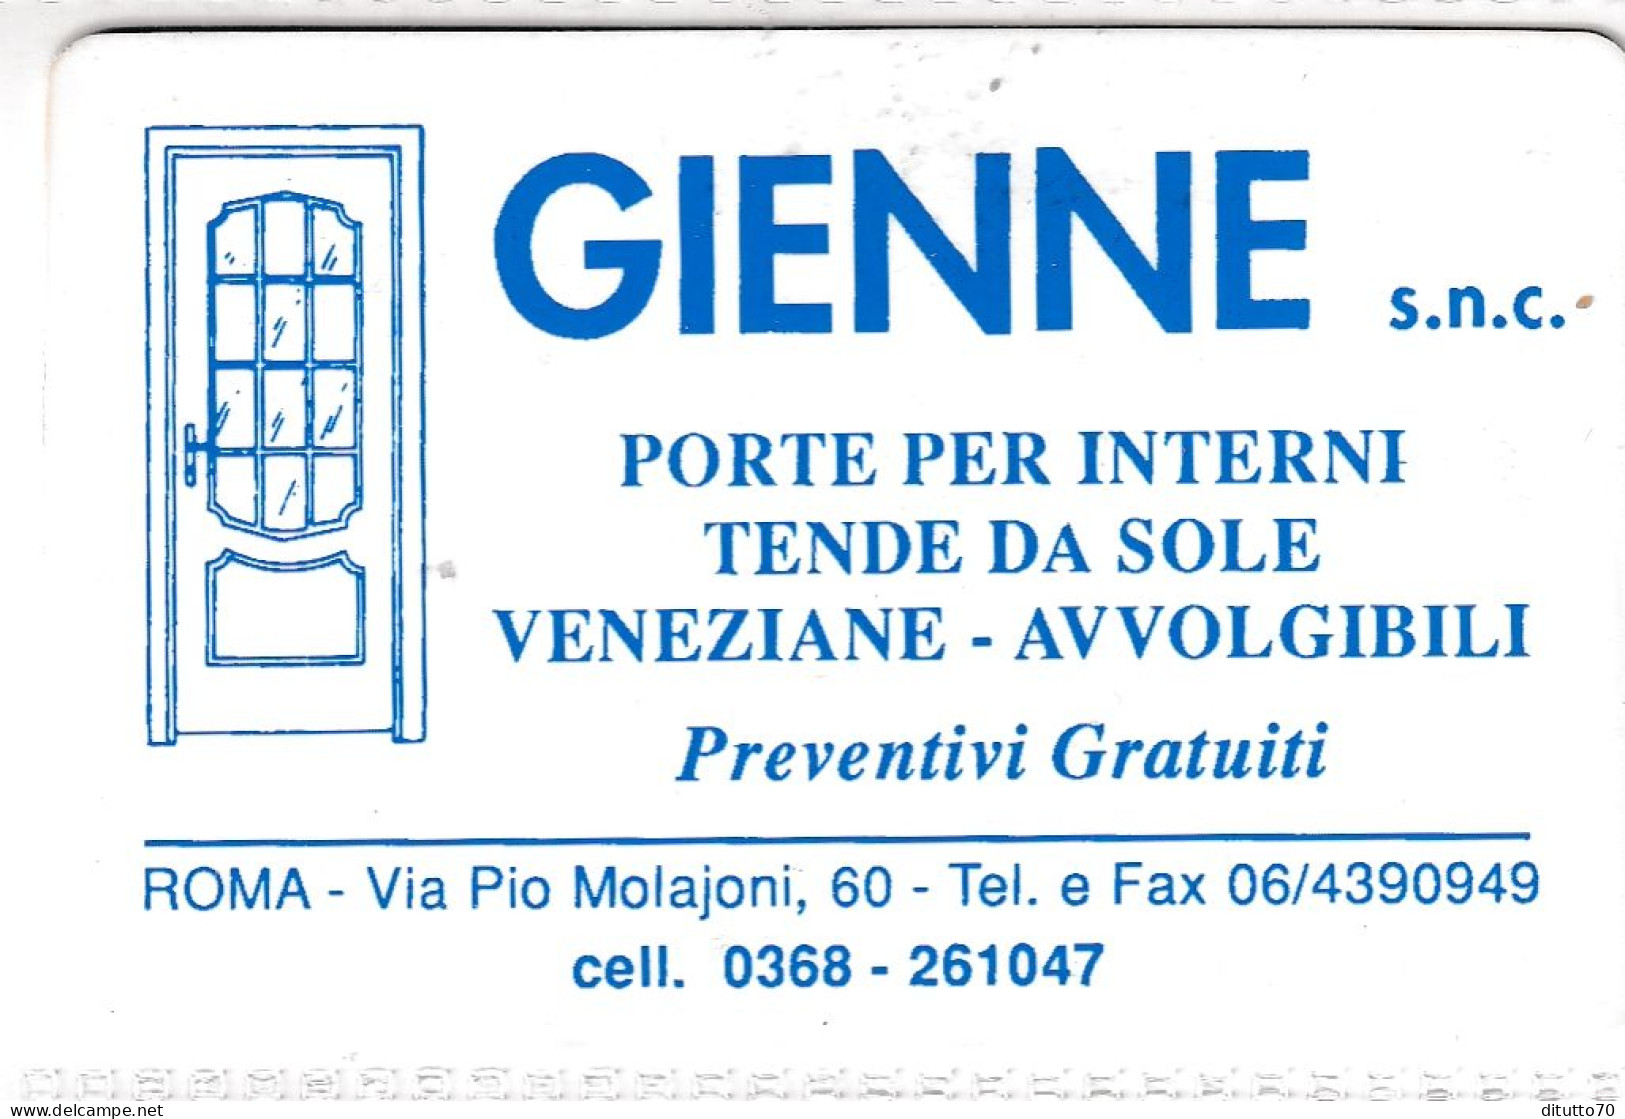 Calendarietto - Gienne - Roma - Anno 1997 - Formato Piccolo : 1991-00